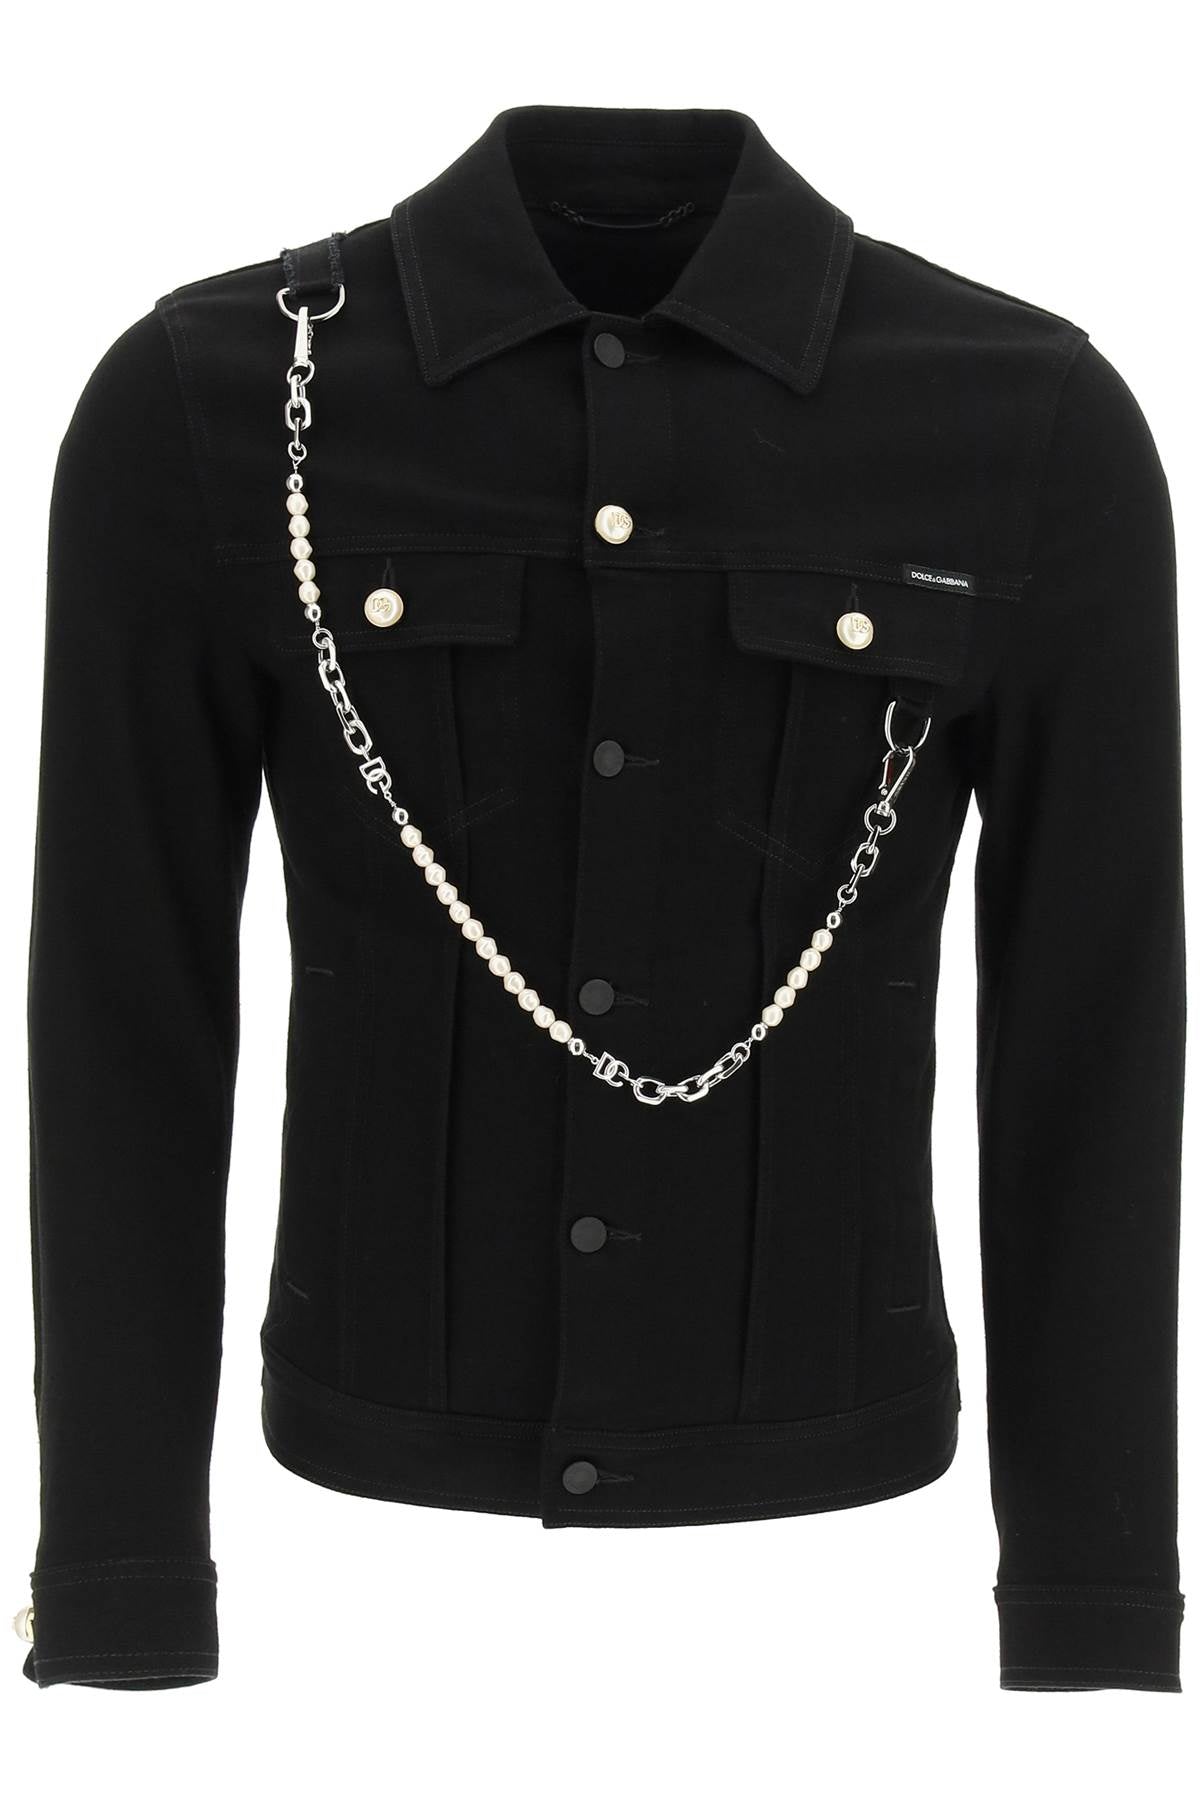 Dolce & Gabbana Denim Jacket With Keychain   Black